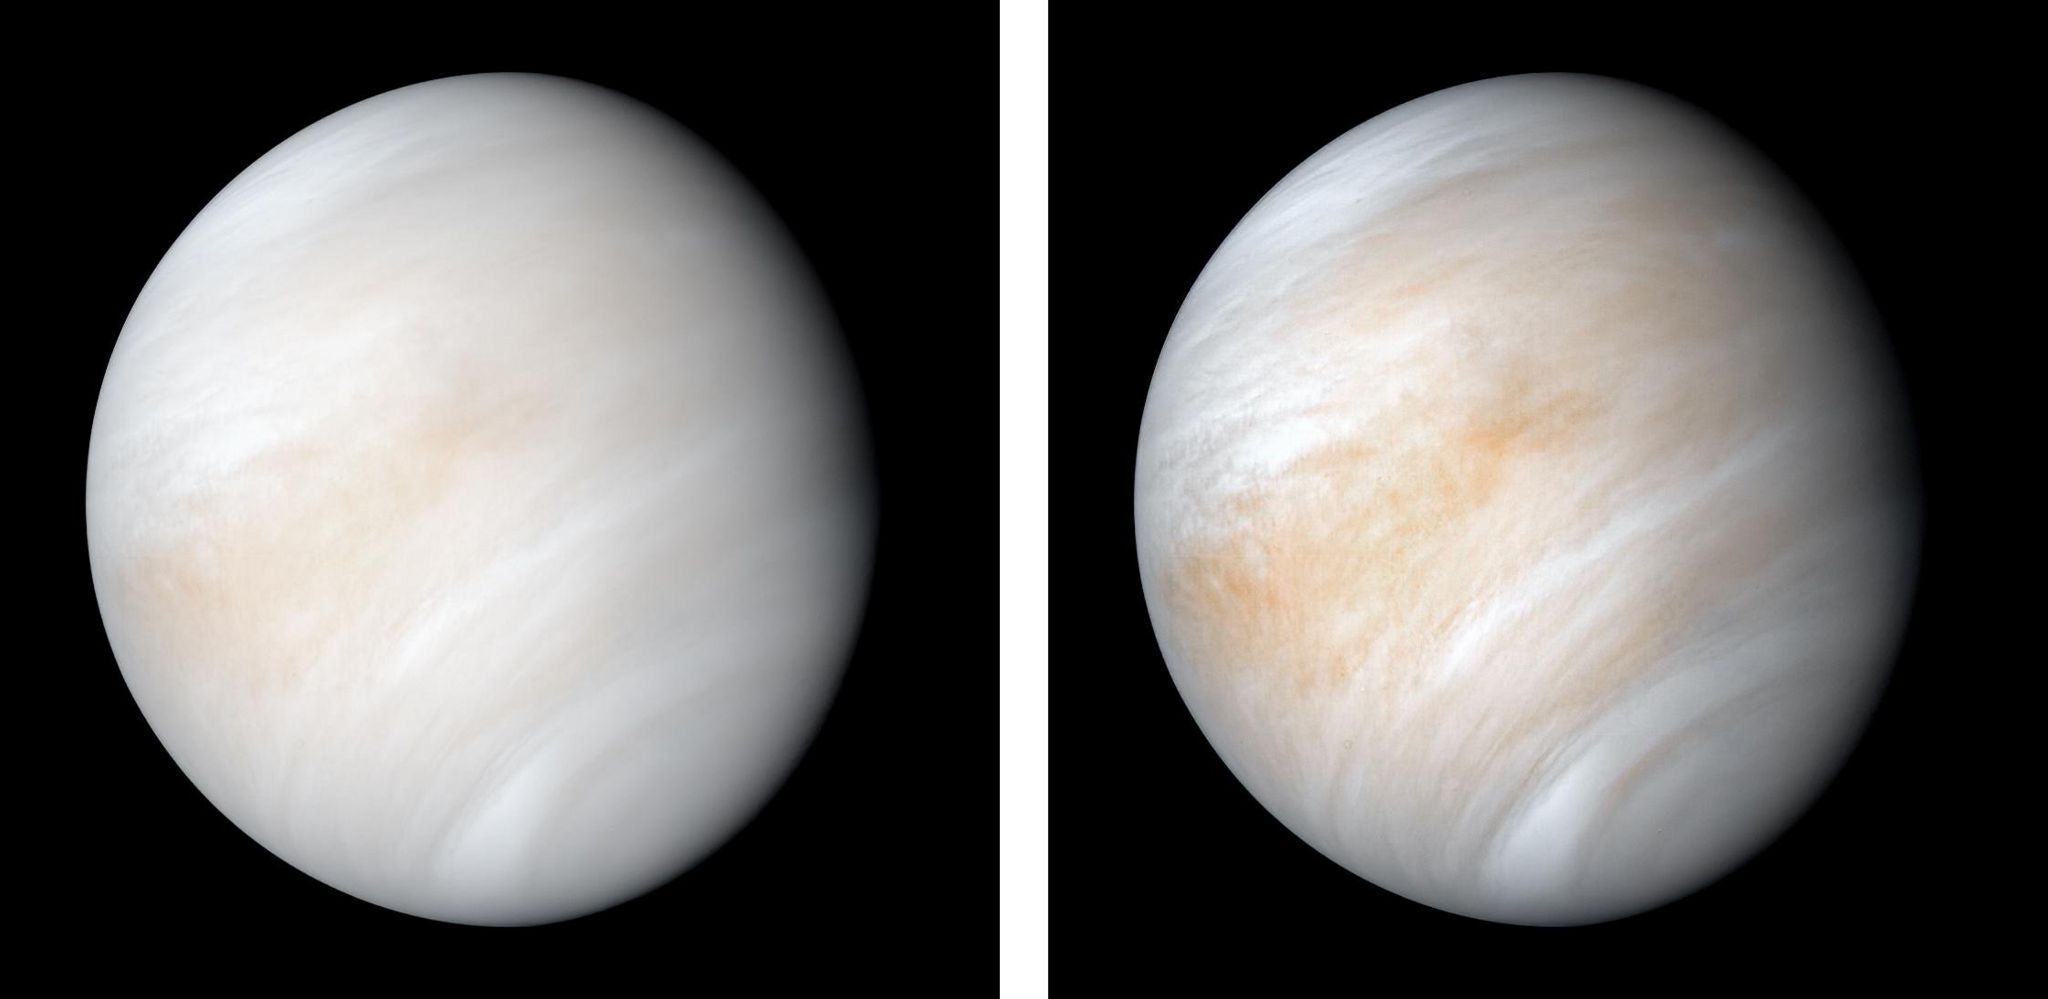 Images of Venus